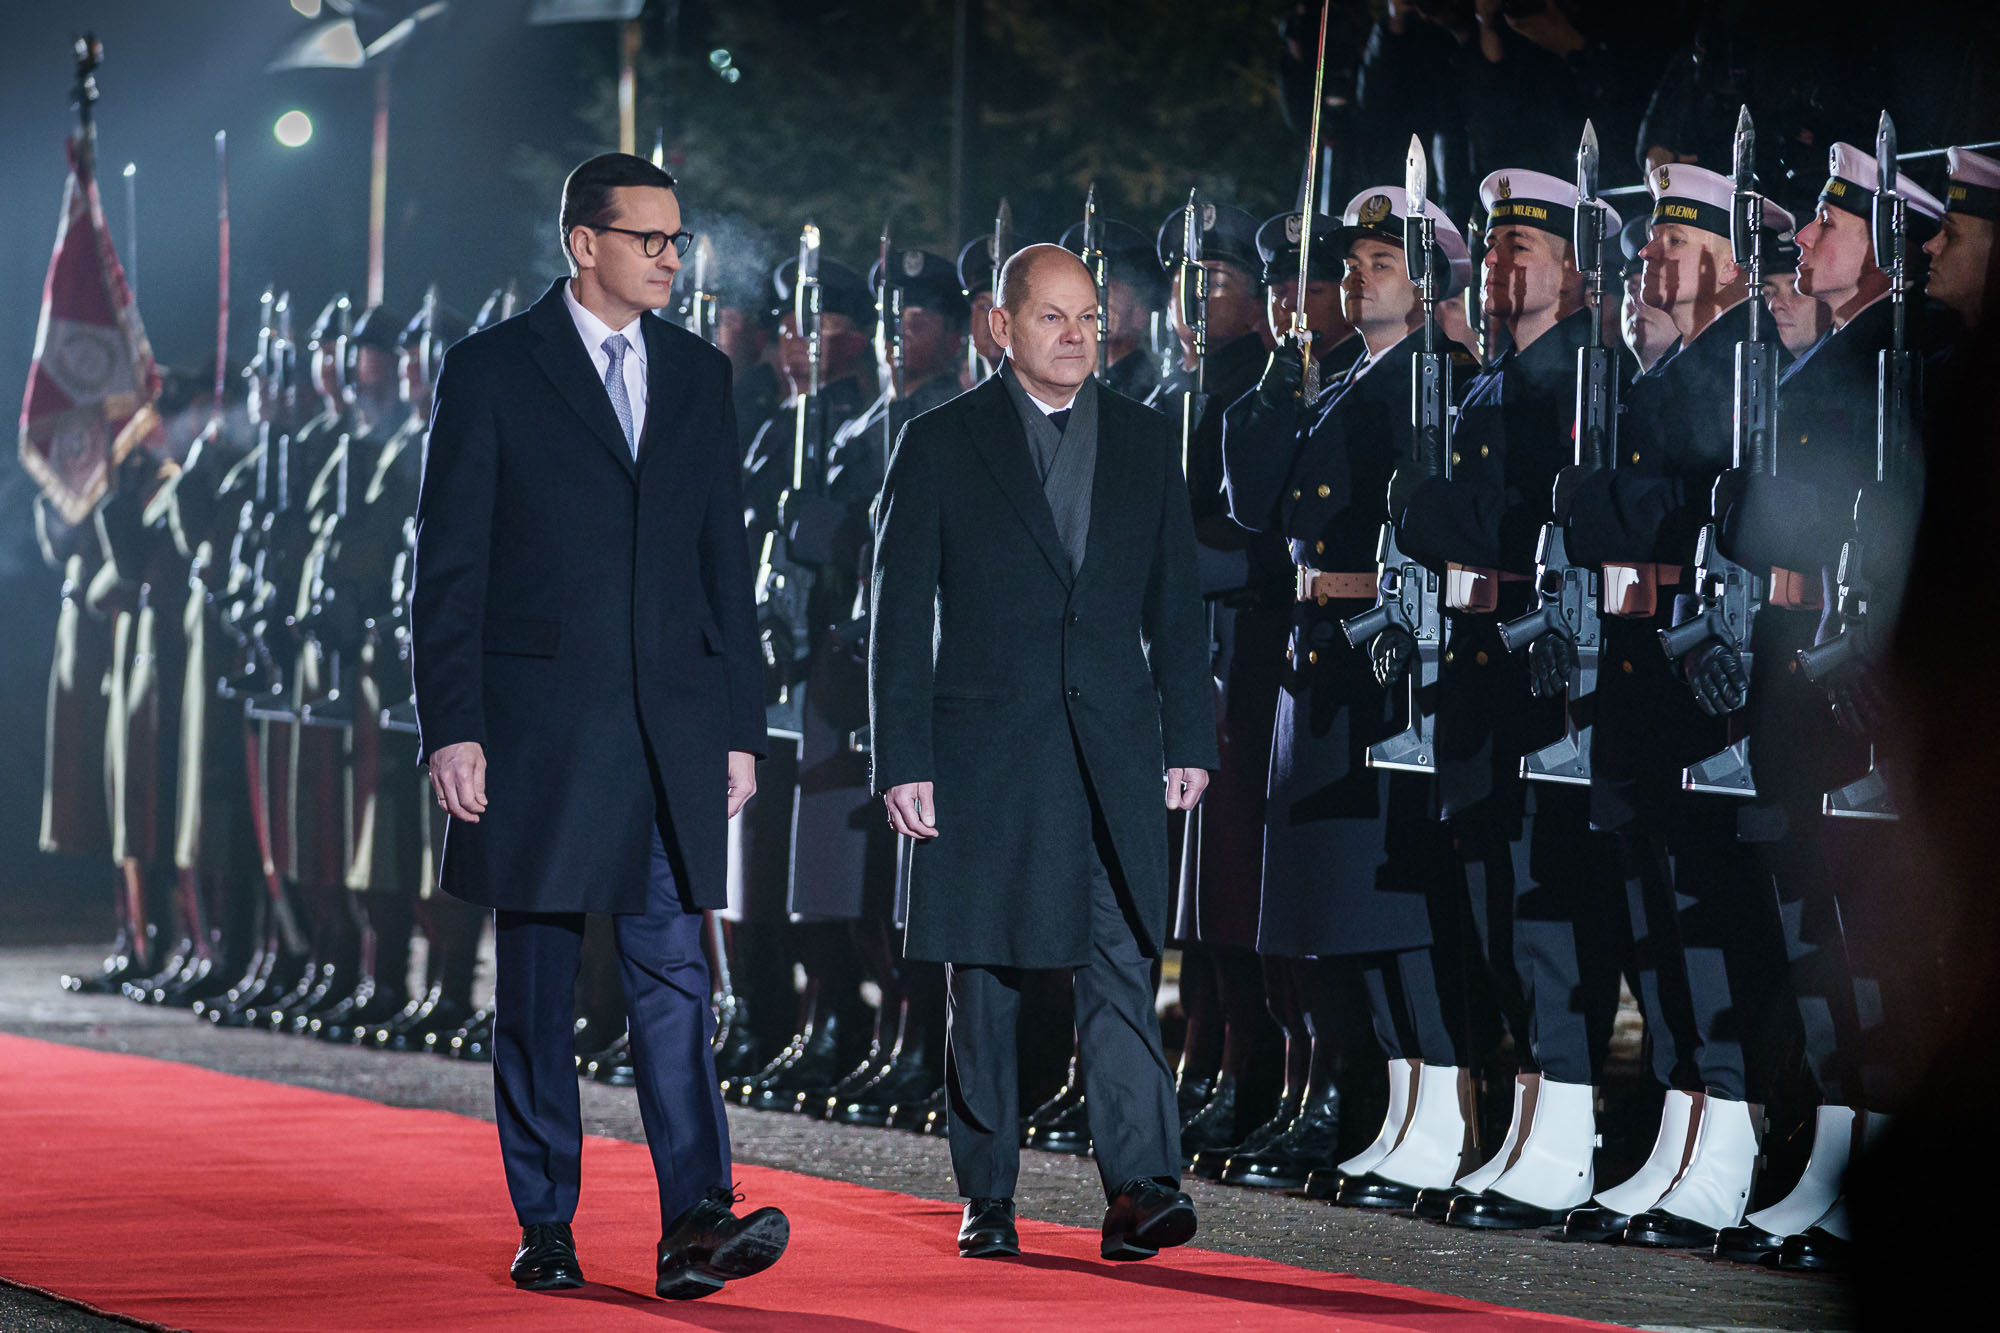 Bundeskanzler Olaf Scholz neben Mateusz Morawiecki, Polens Ministerpräsident, bei der Begrüßung mit militärischen Ehren.